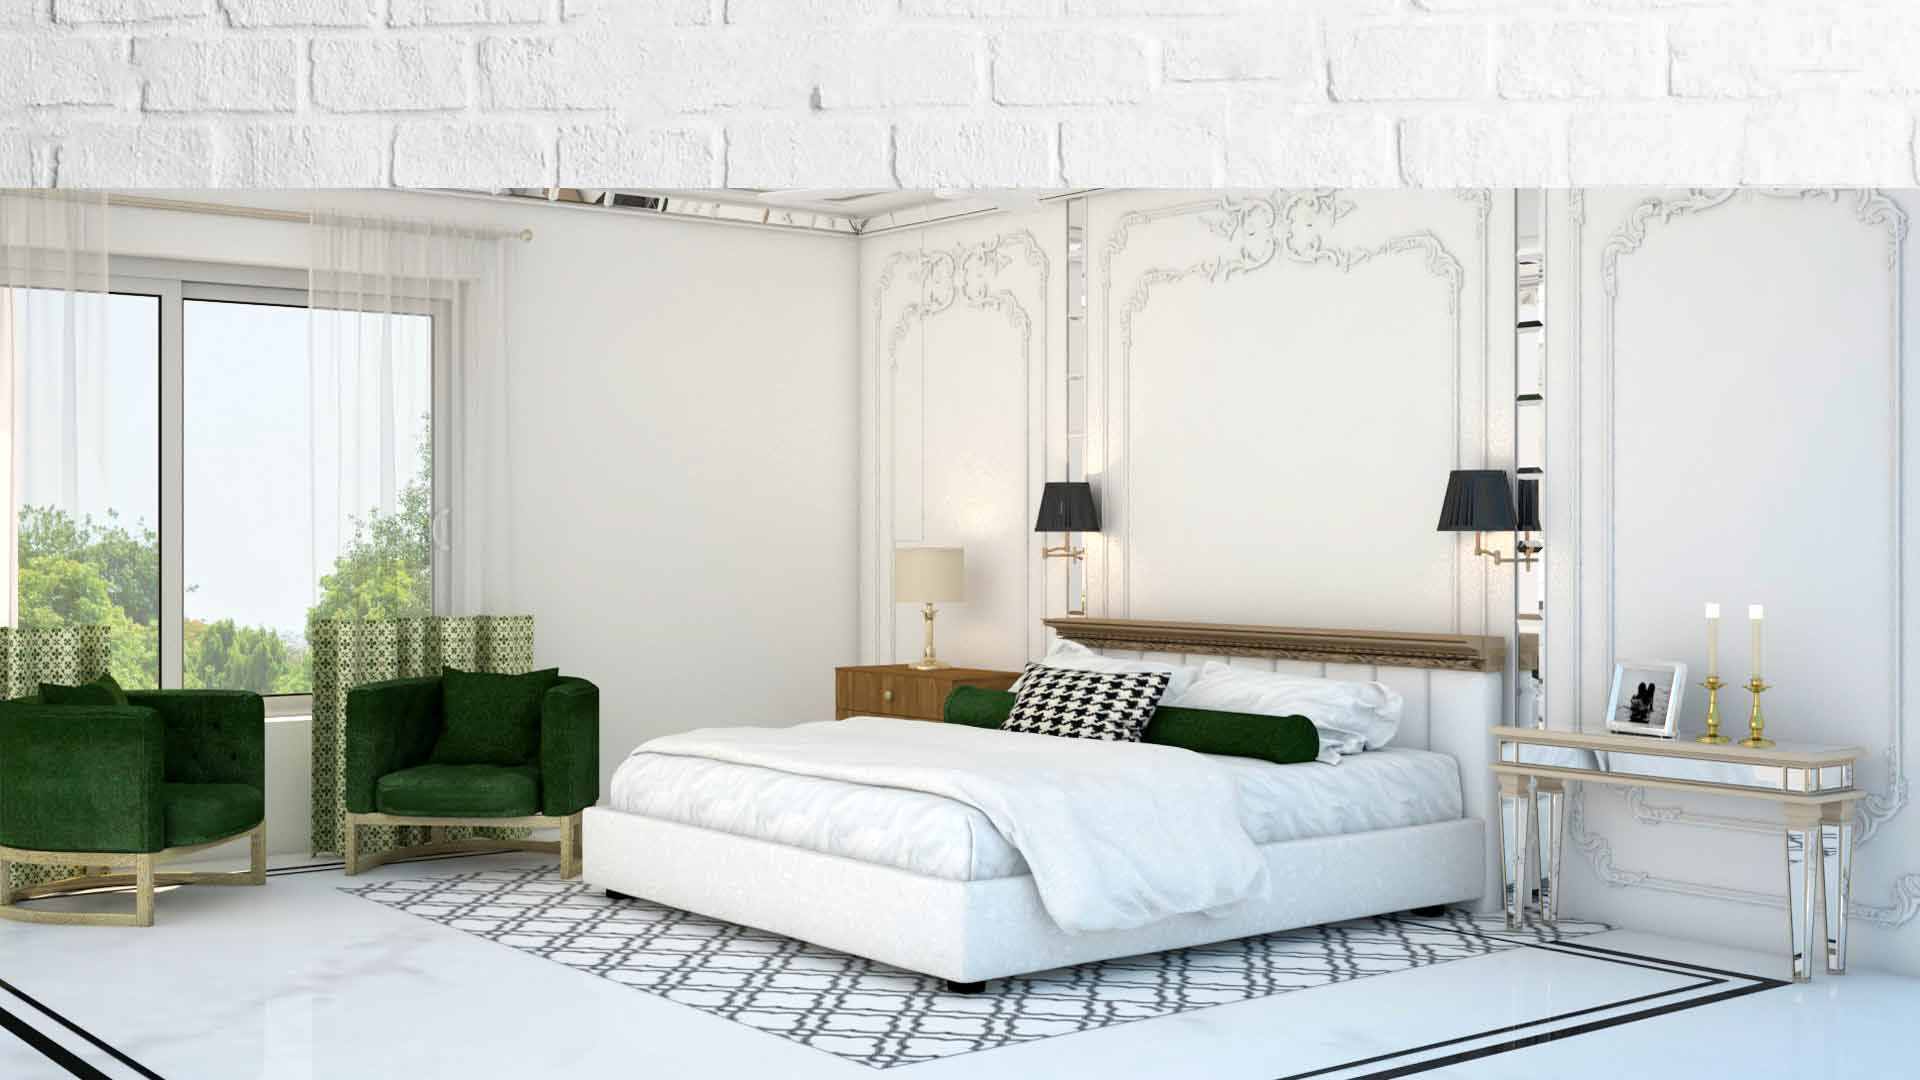 Bedroom Interior Designs